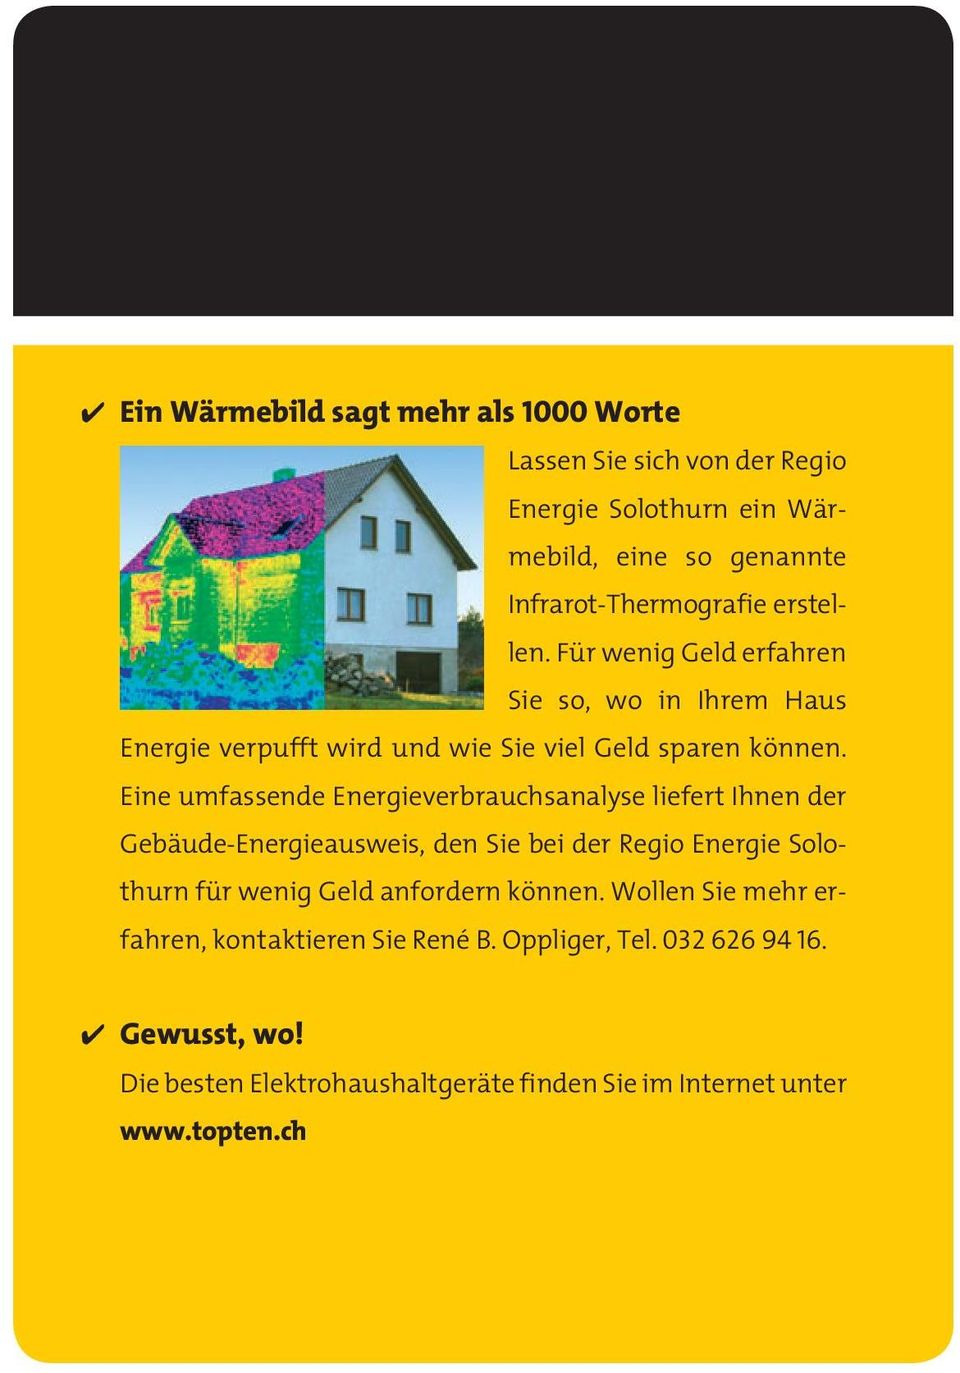 Eine umfassende Energieverbrauchsanalyse liefert Ihnen der Gebäude-Energieausweis, den Sie bei der Regio Energie Solothurn für wenig Geld anfordern